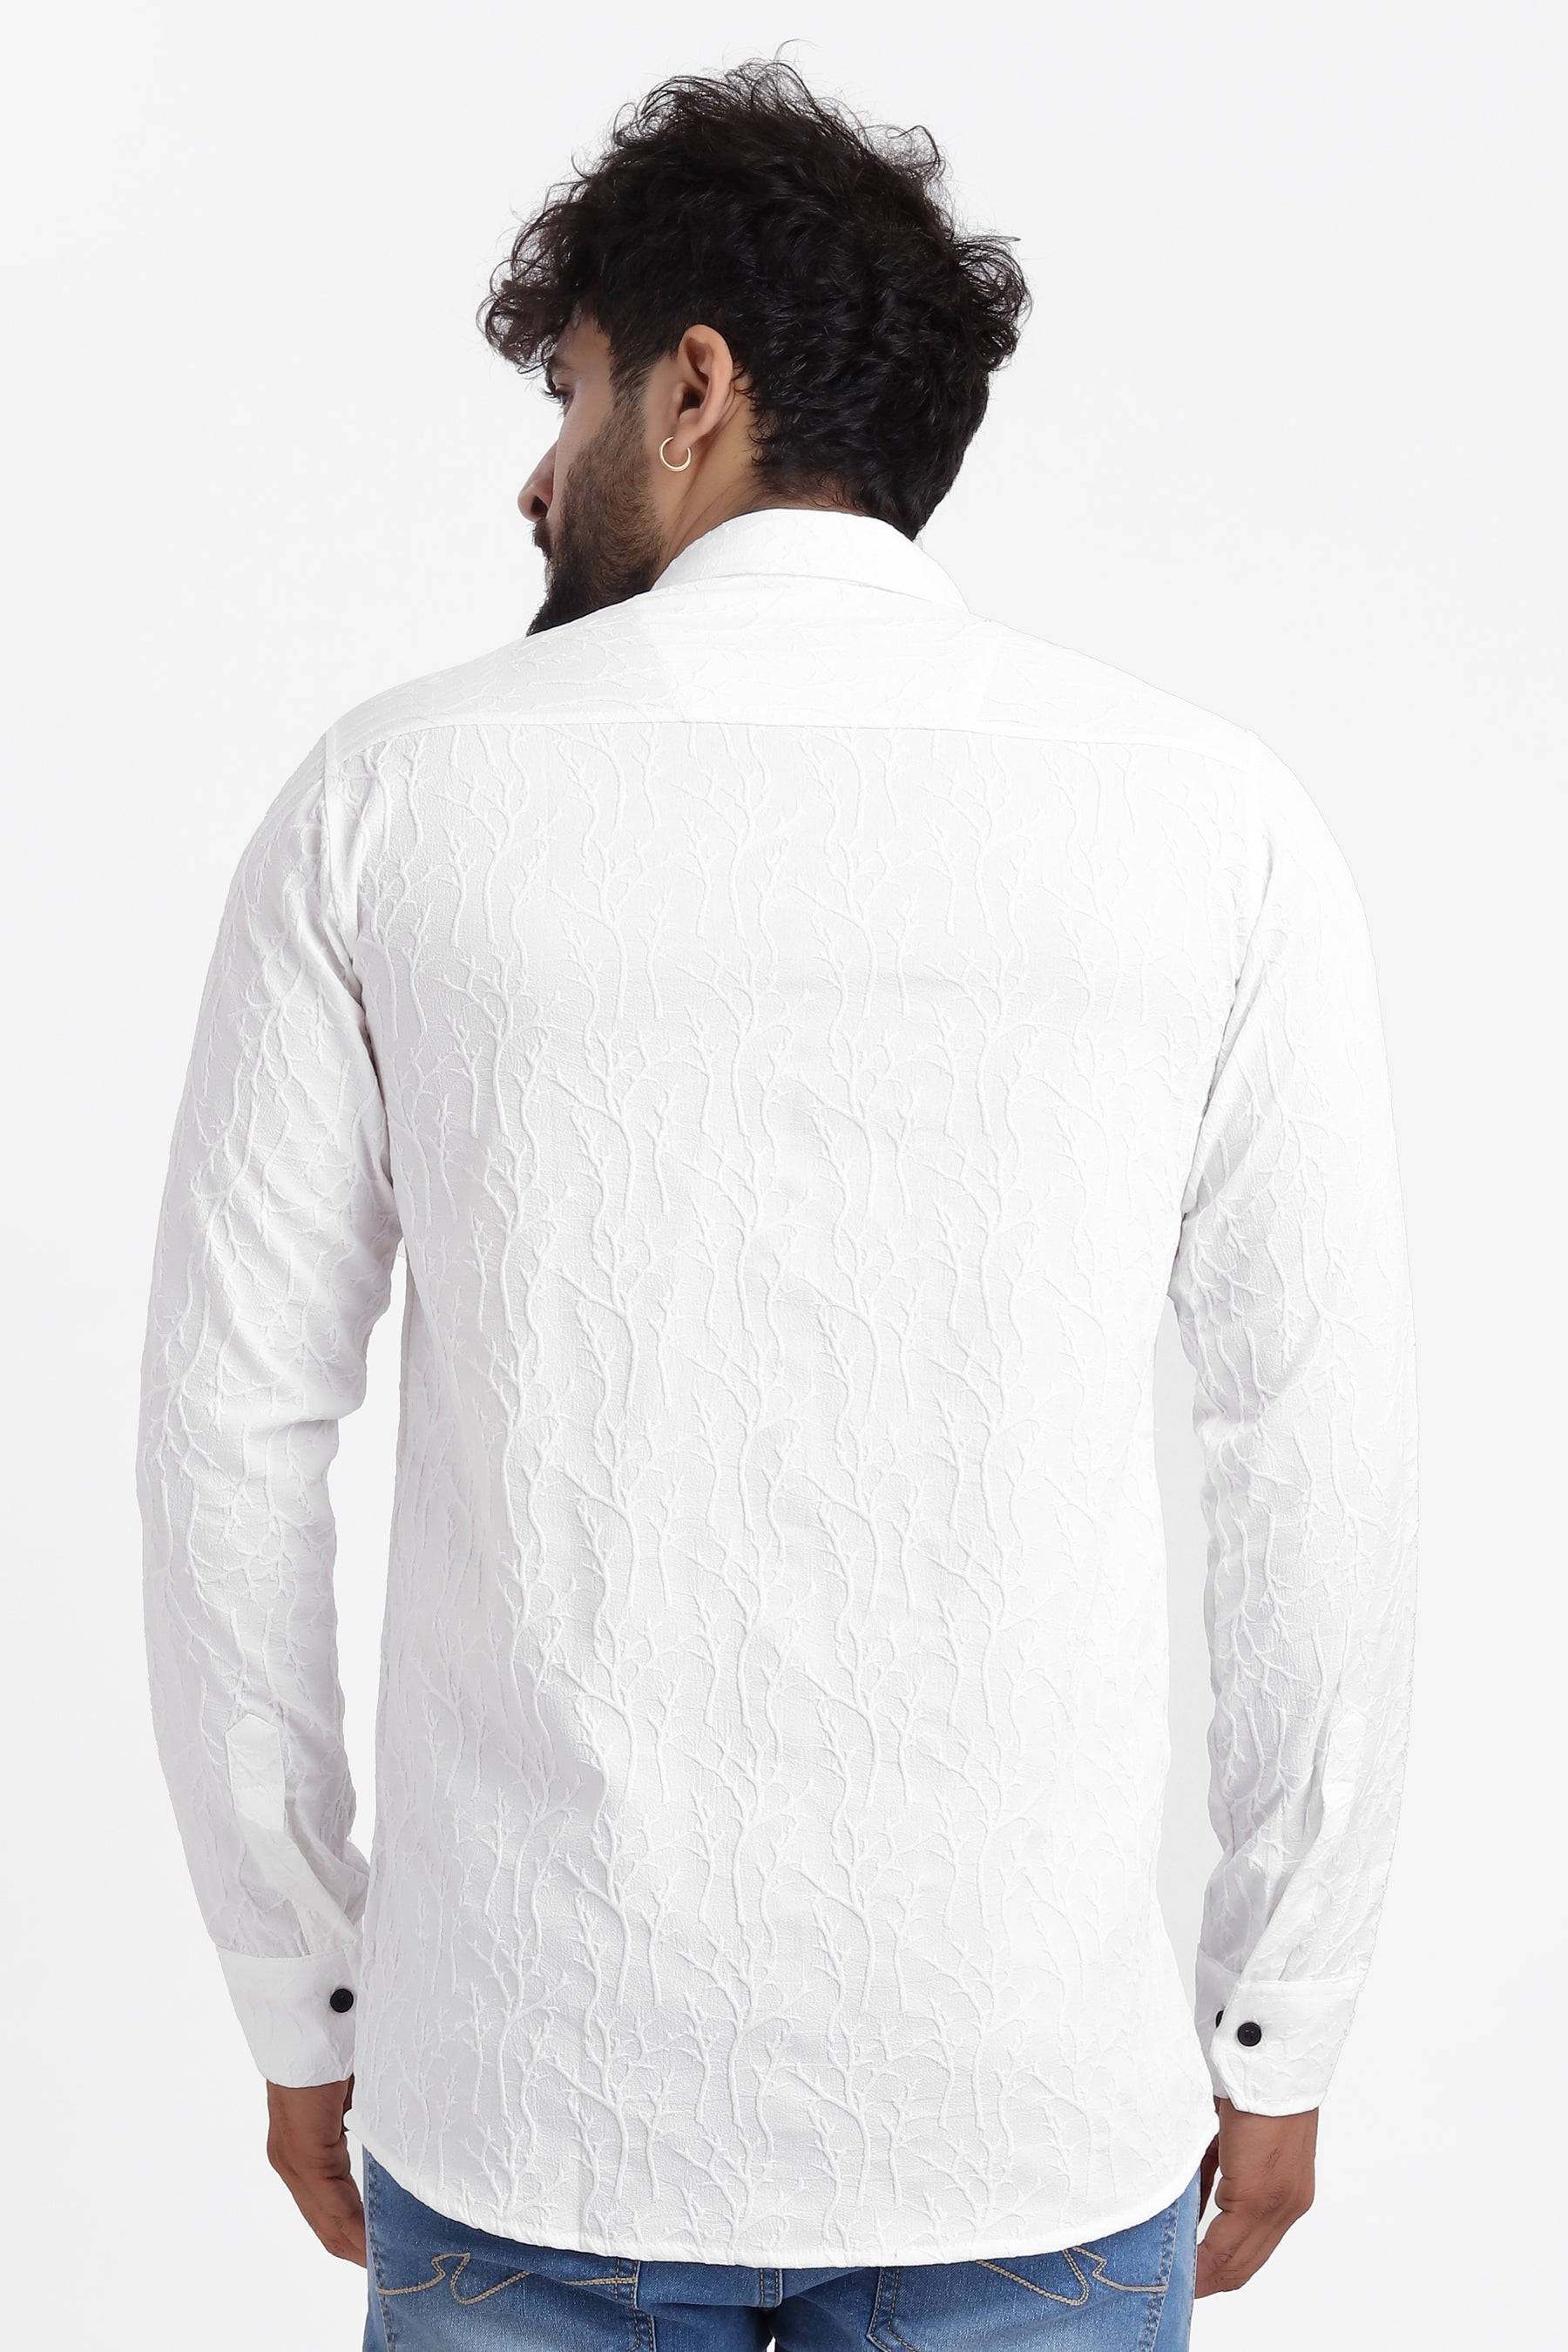 Limb Jacquard White Shirt